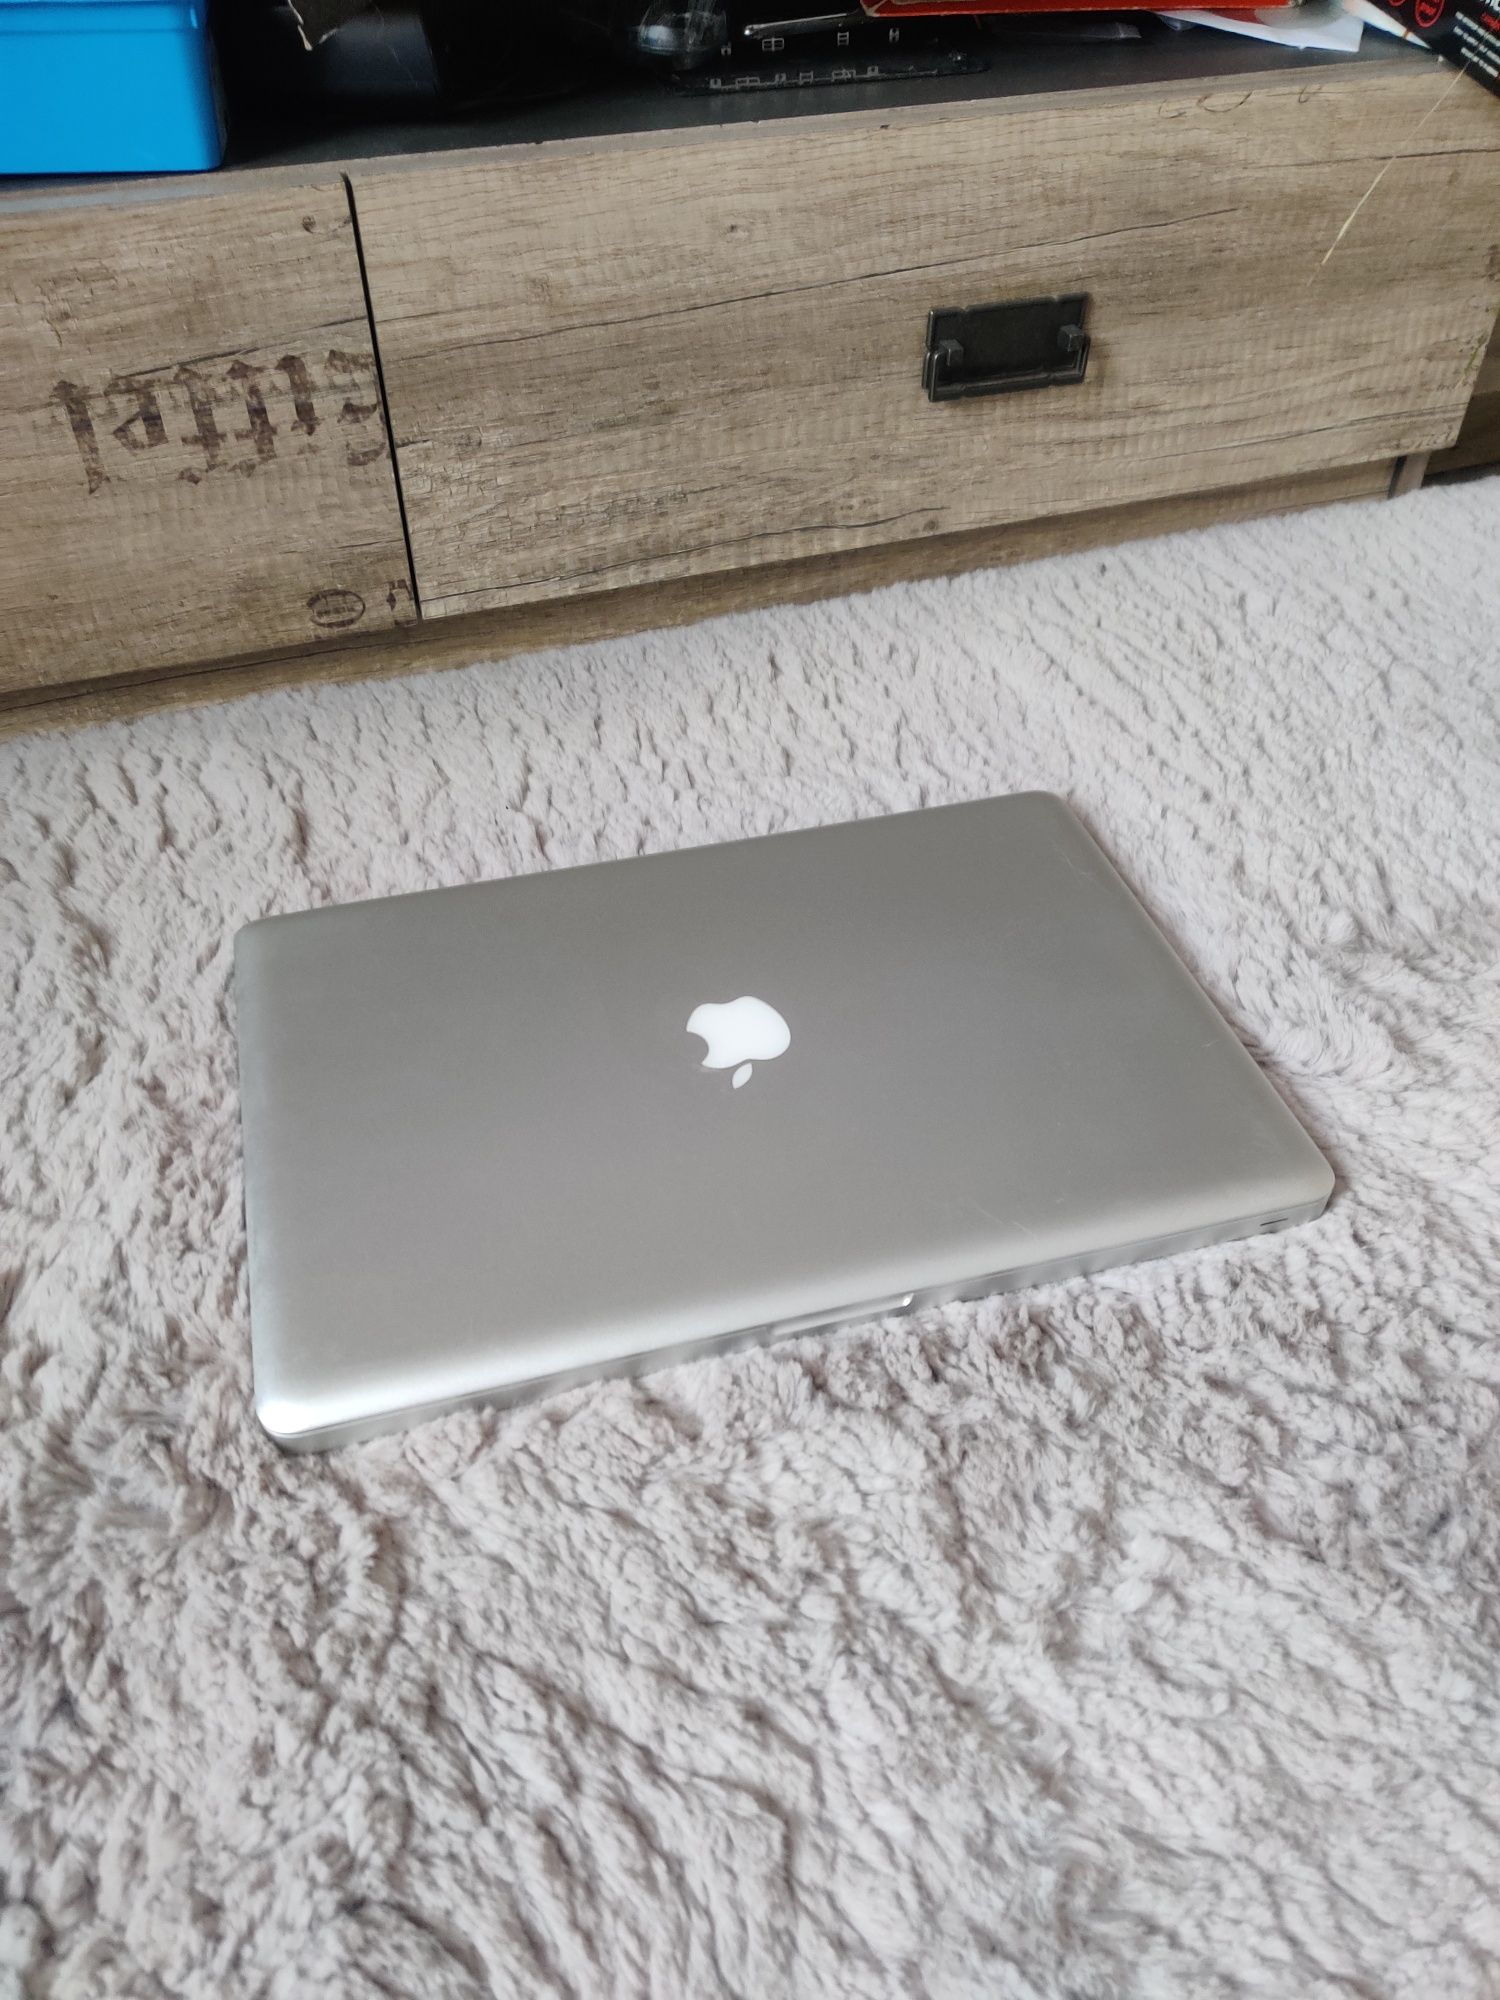 Apple MacBook pro 15 a1286 i7 8gb ram 256gb SSD w bardzo ładnym stanie